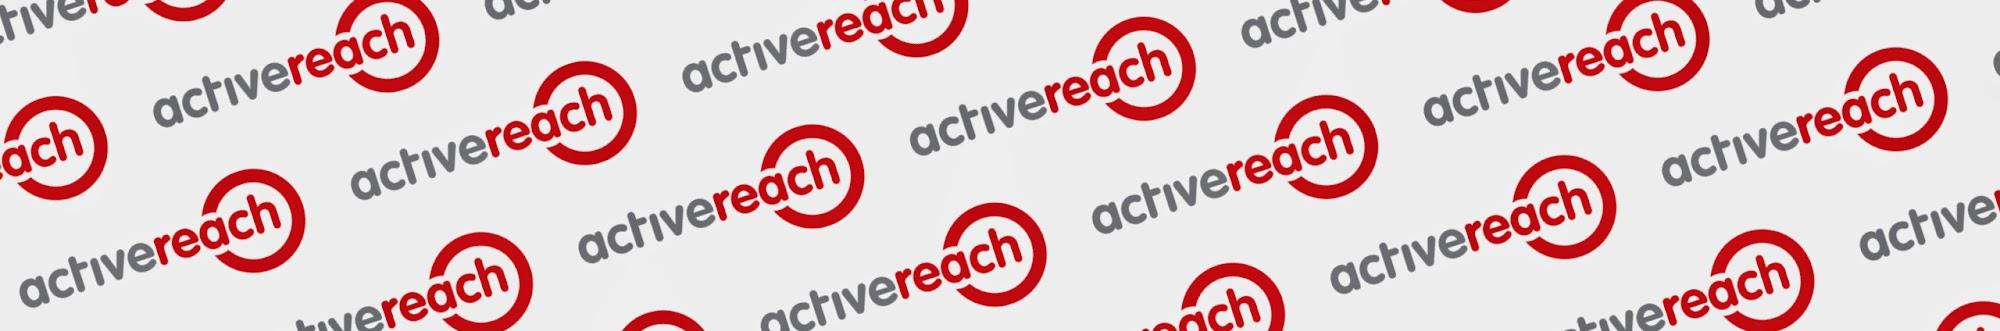 activereach Ltd